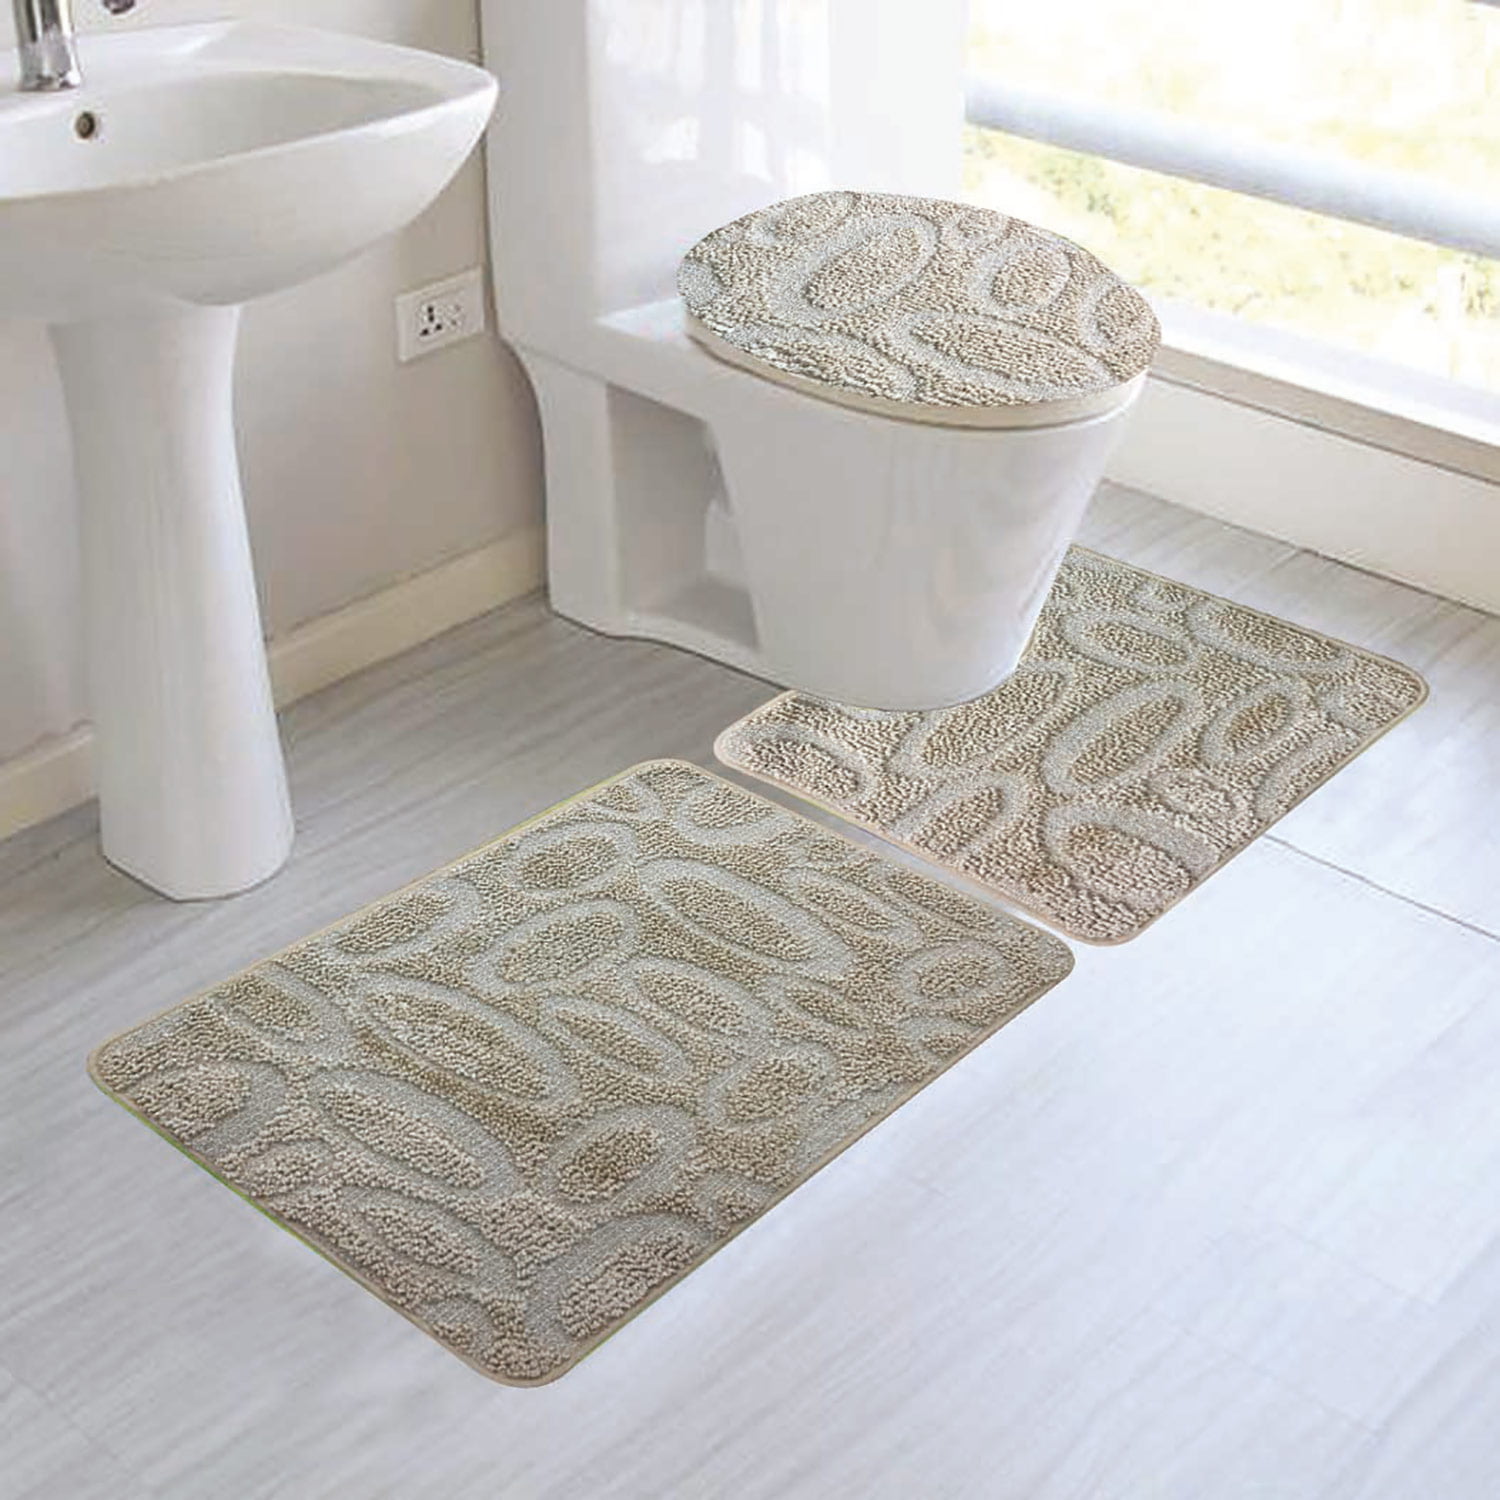 Luxury bathroom rug sets